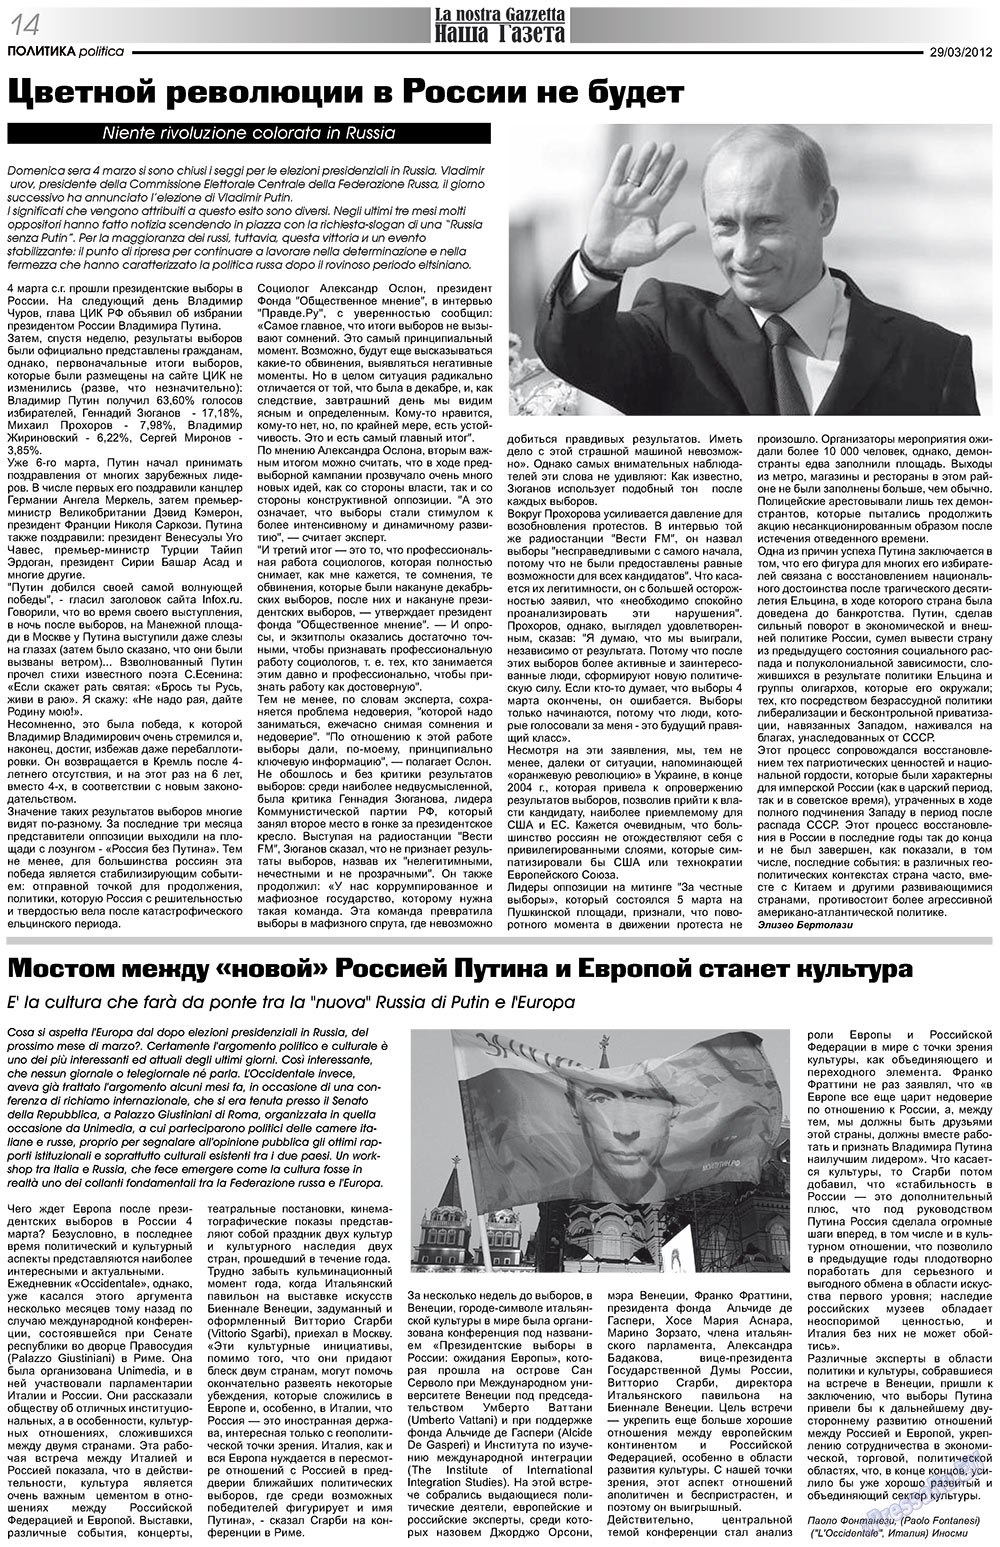 Nascha Gazeta (Zeitung). 2012 Jahr, Ausgabe 153, Seite 14